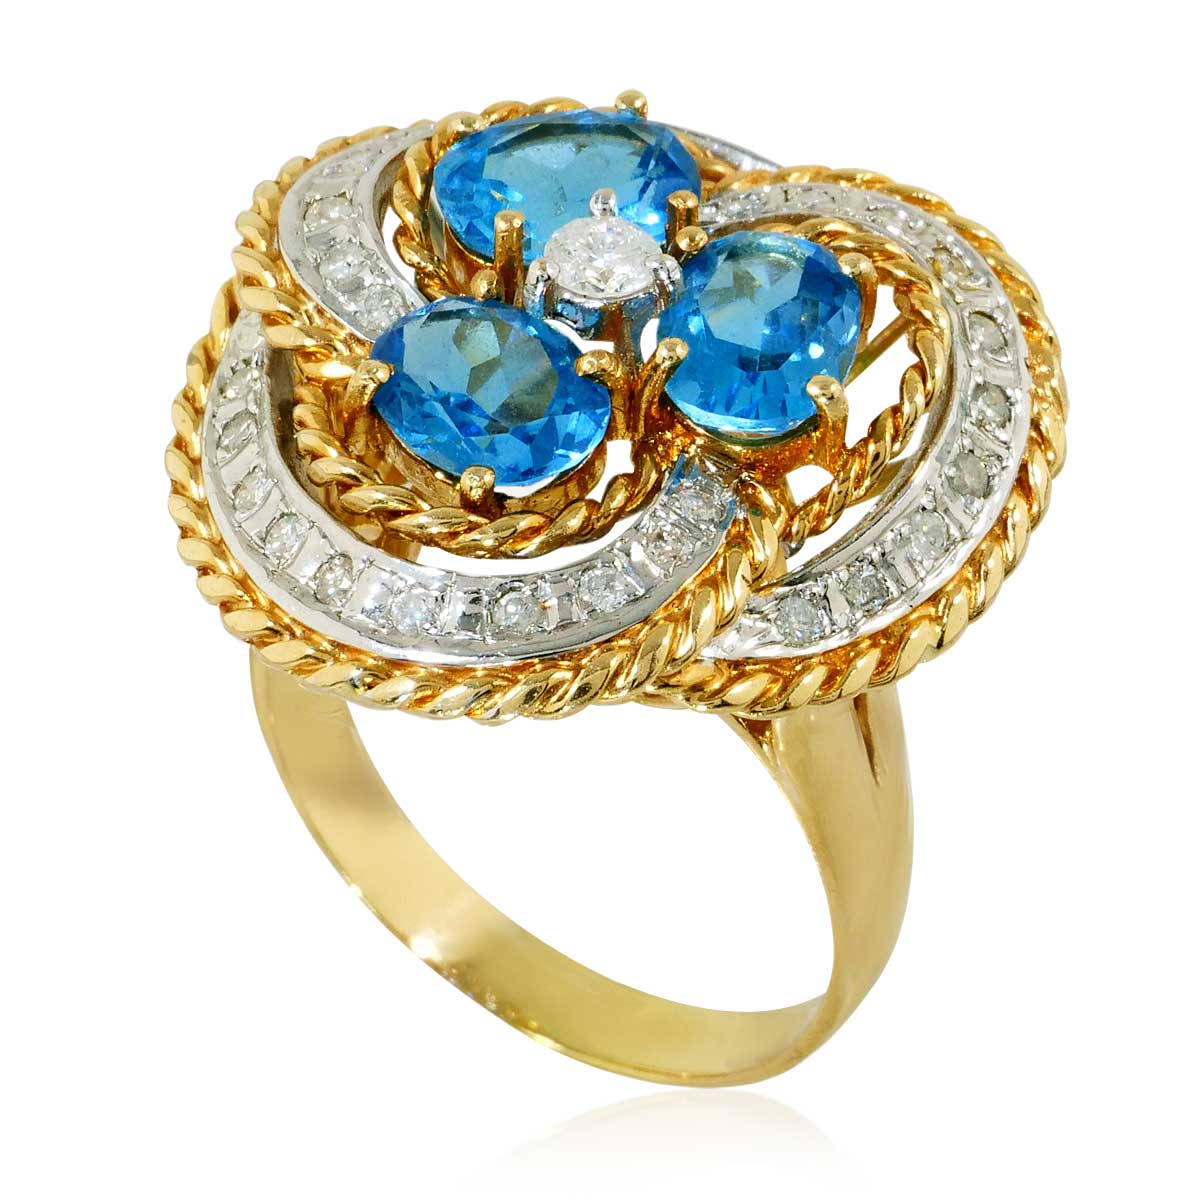 Edeltopas-Diamant Set bestehend aus Ring und Ohrringe mit 15,86ct Edeltopas und 1,26ct Diamanten in 14 kt Gelbgold